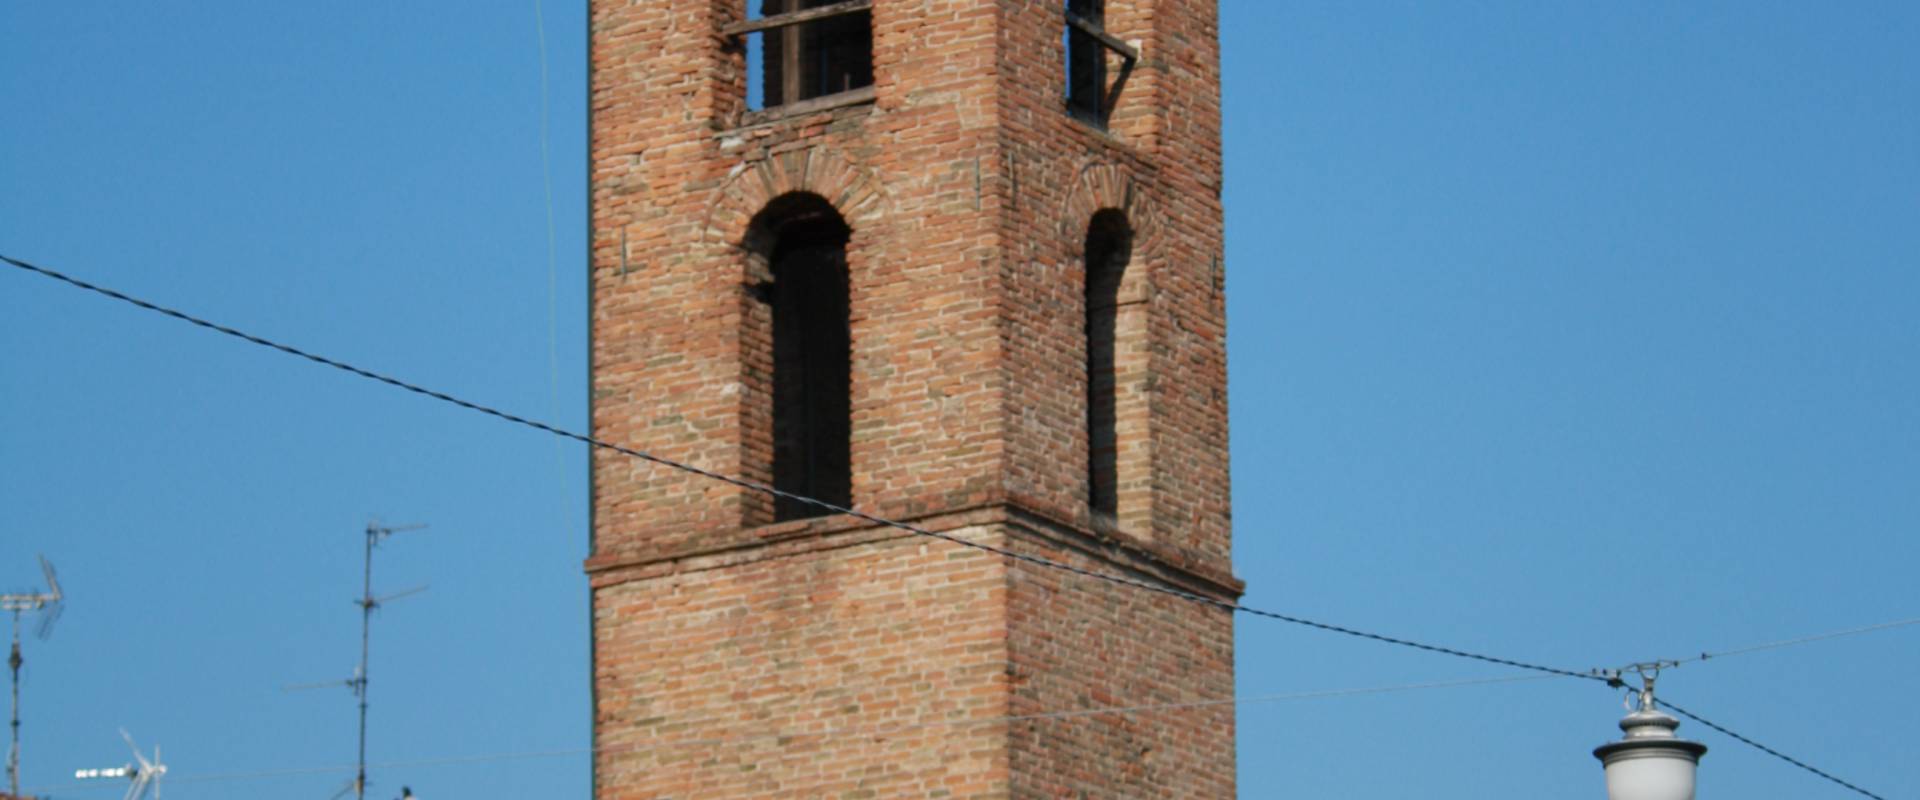 Torre civica - dettaglio photo by Saxi82